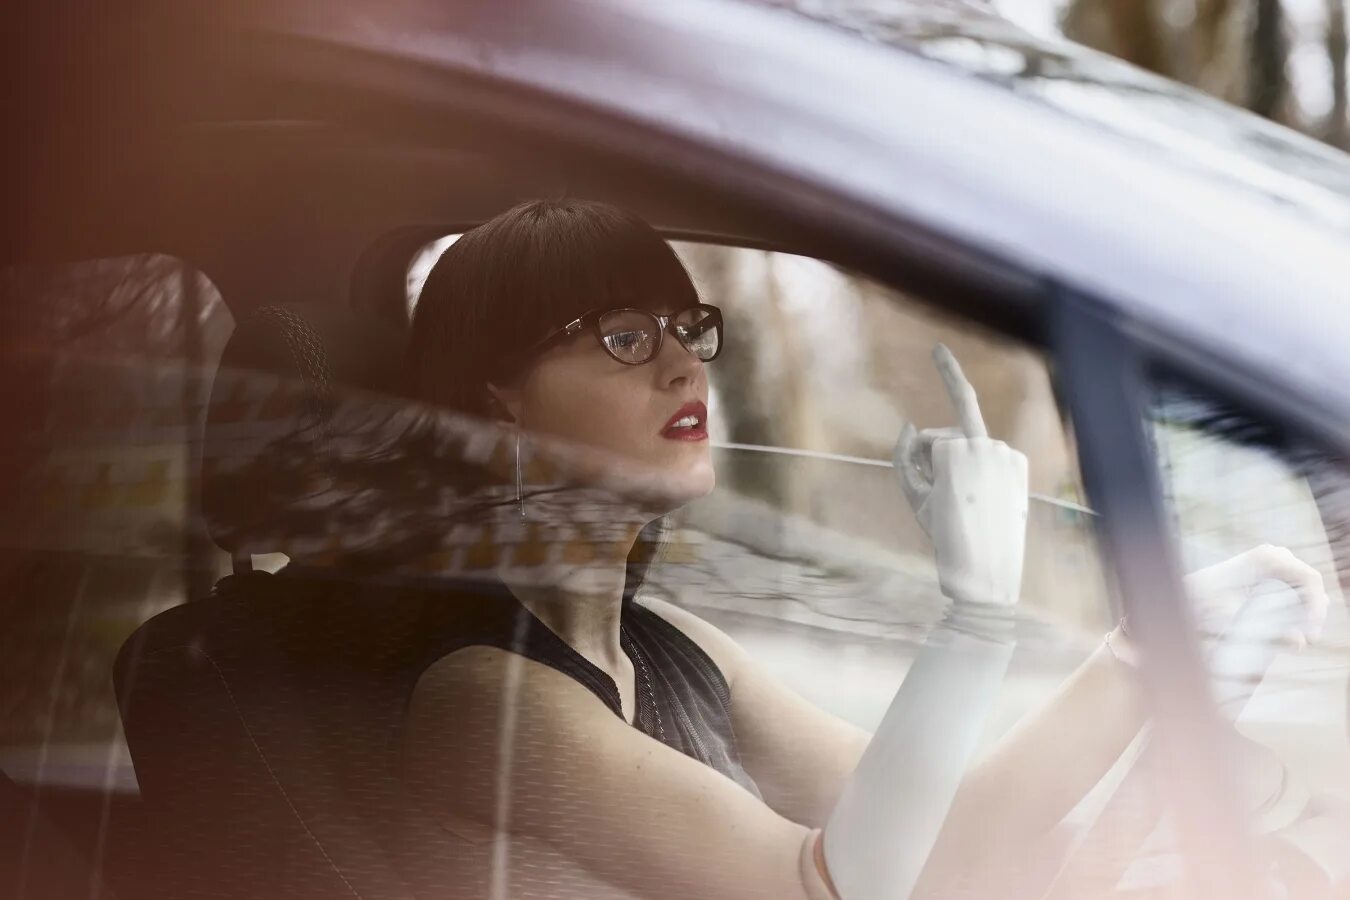 Drive different. Креативные картинки автокондиционирования с девушкой Мороз. Реклама фото. Handicap cars.